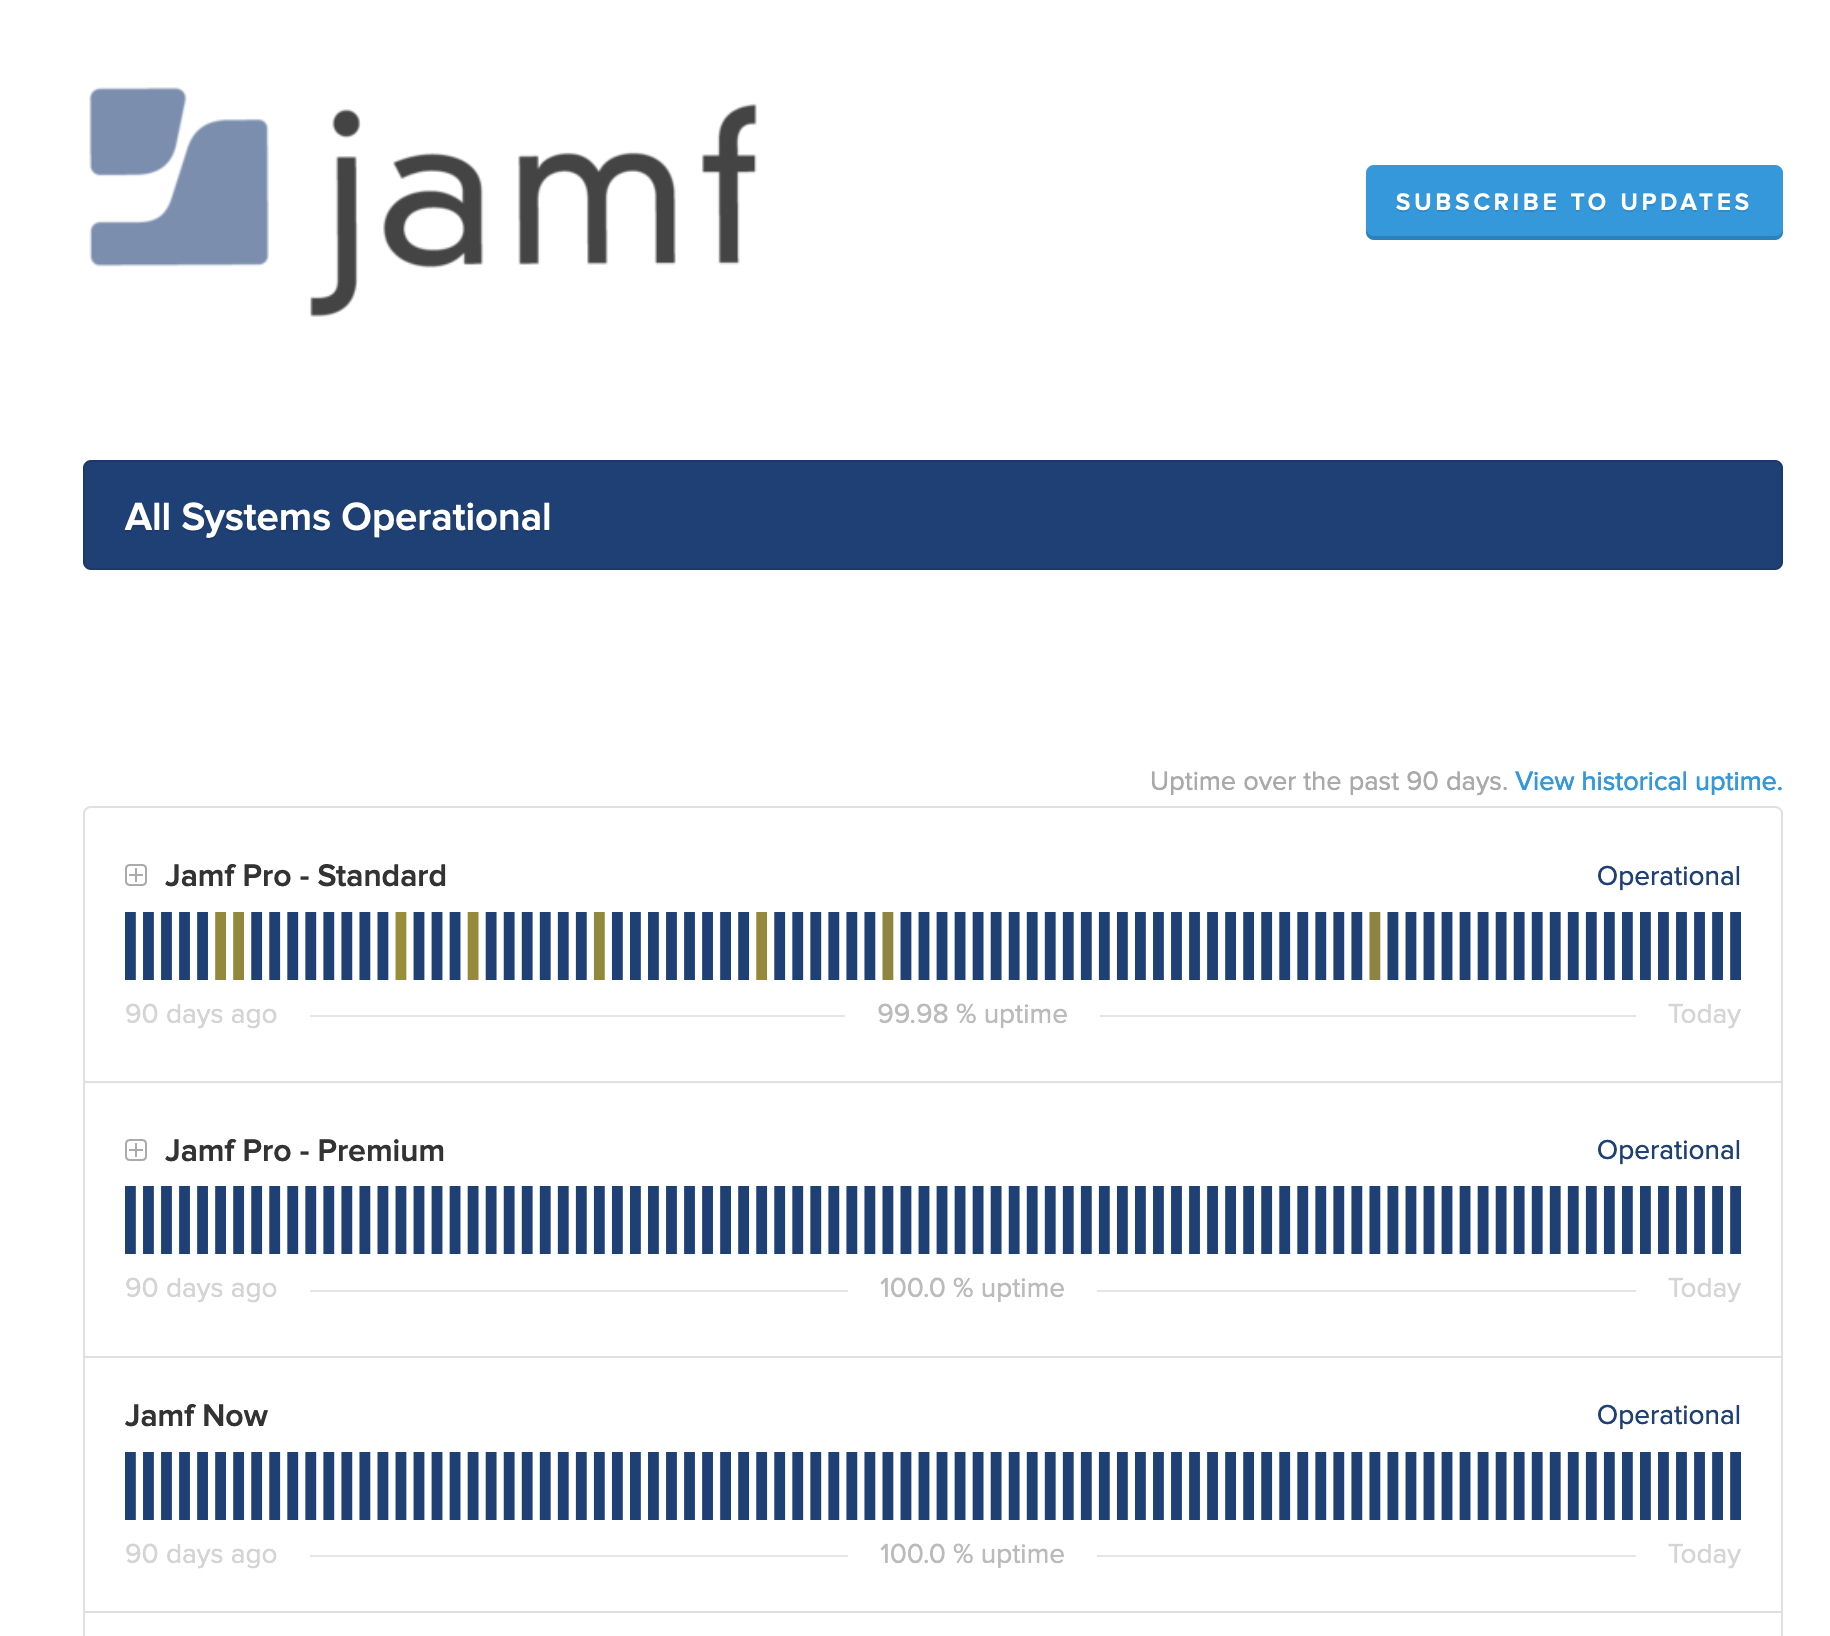 Jamf ロゴのスクリーンショット。すべてのオペレーションシステムのステータスと、アップデート情報を購読するためのボタンが表示されている。